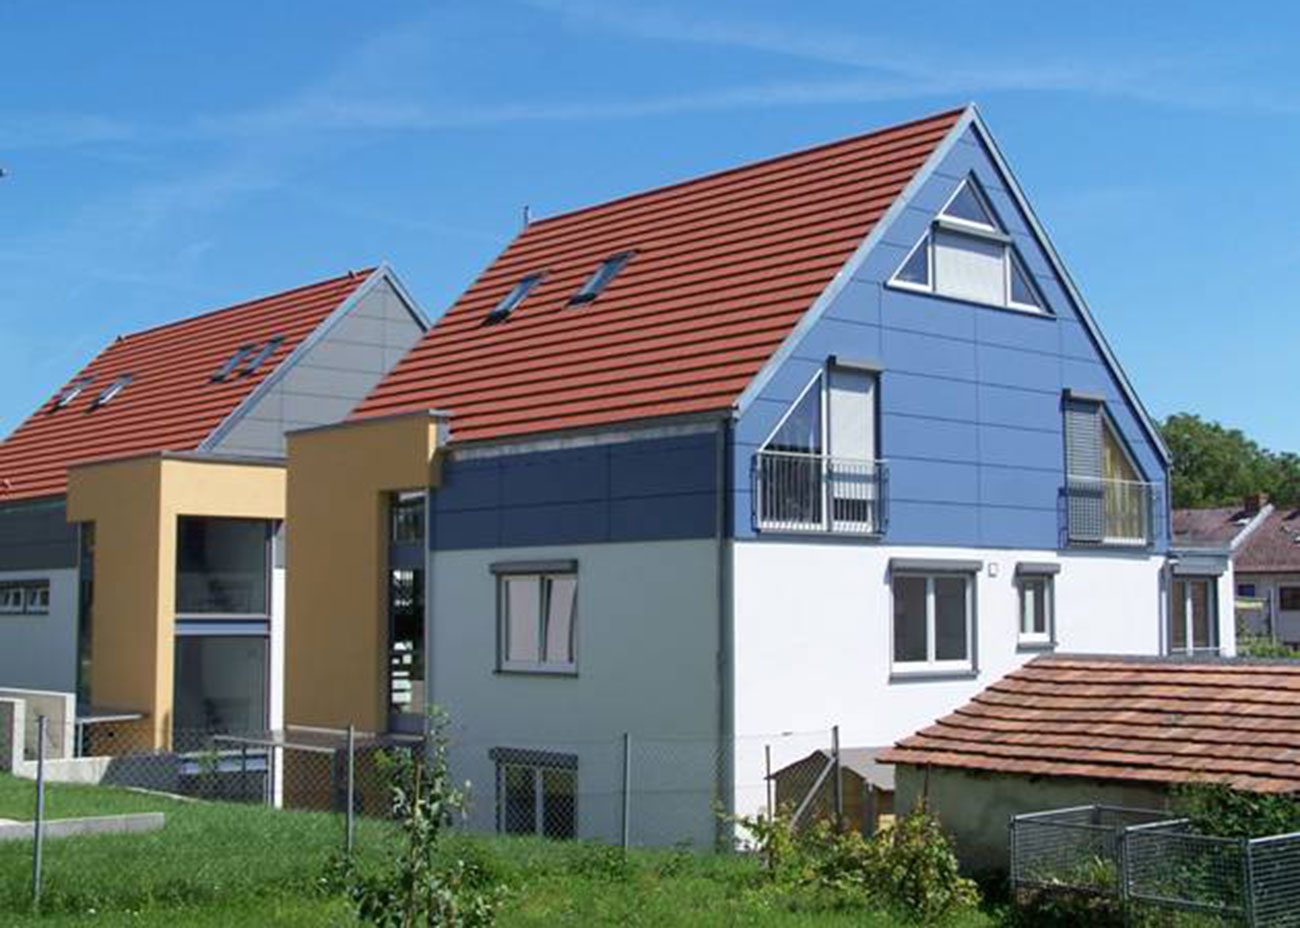 Neubau von vier Mehrfamilienhäusern Litzelstetter Strasse 31 + 33, Konstanz